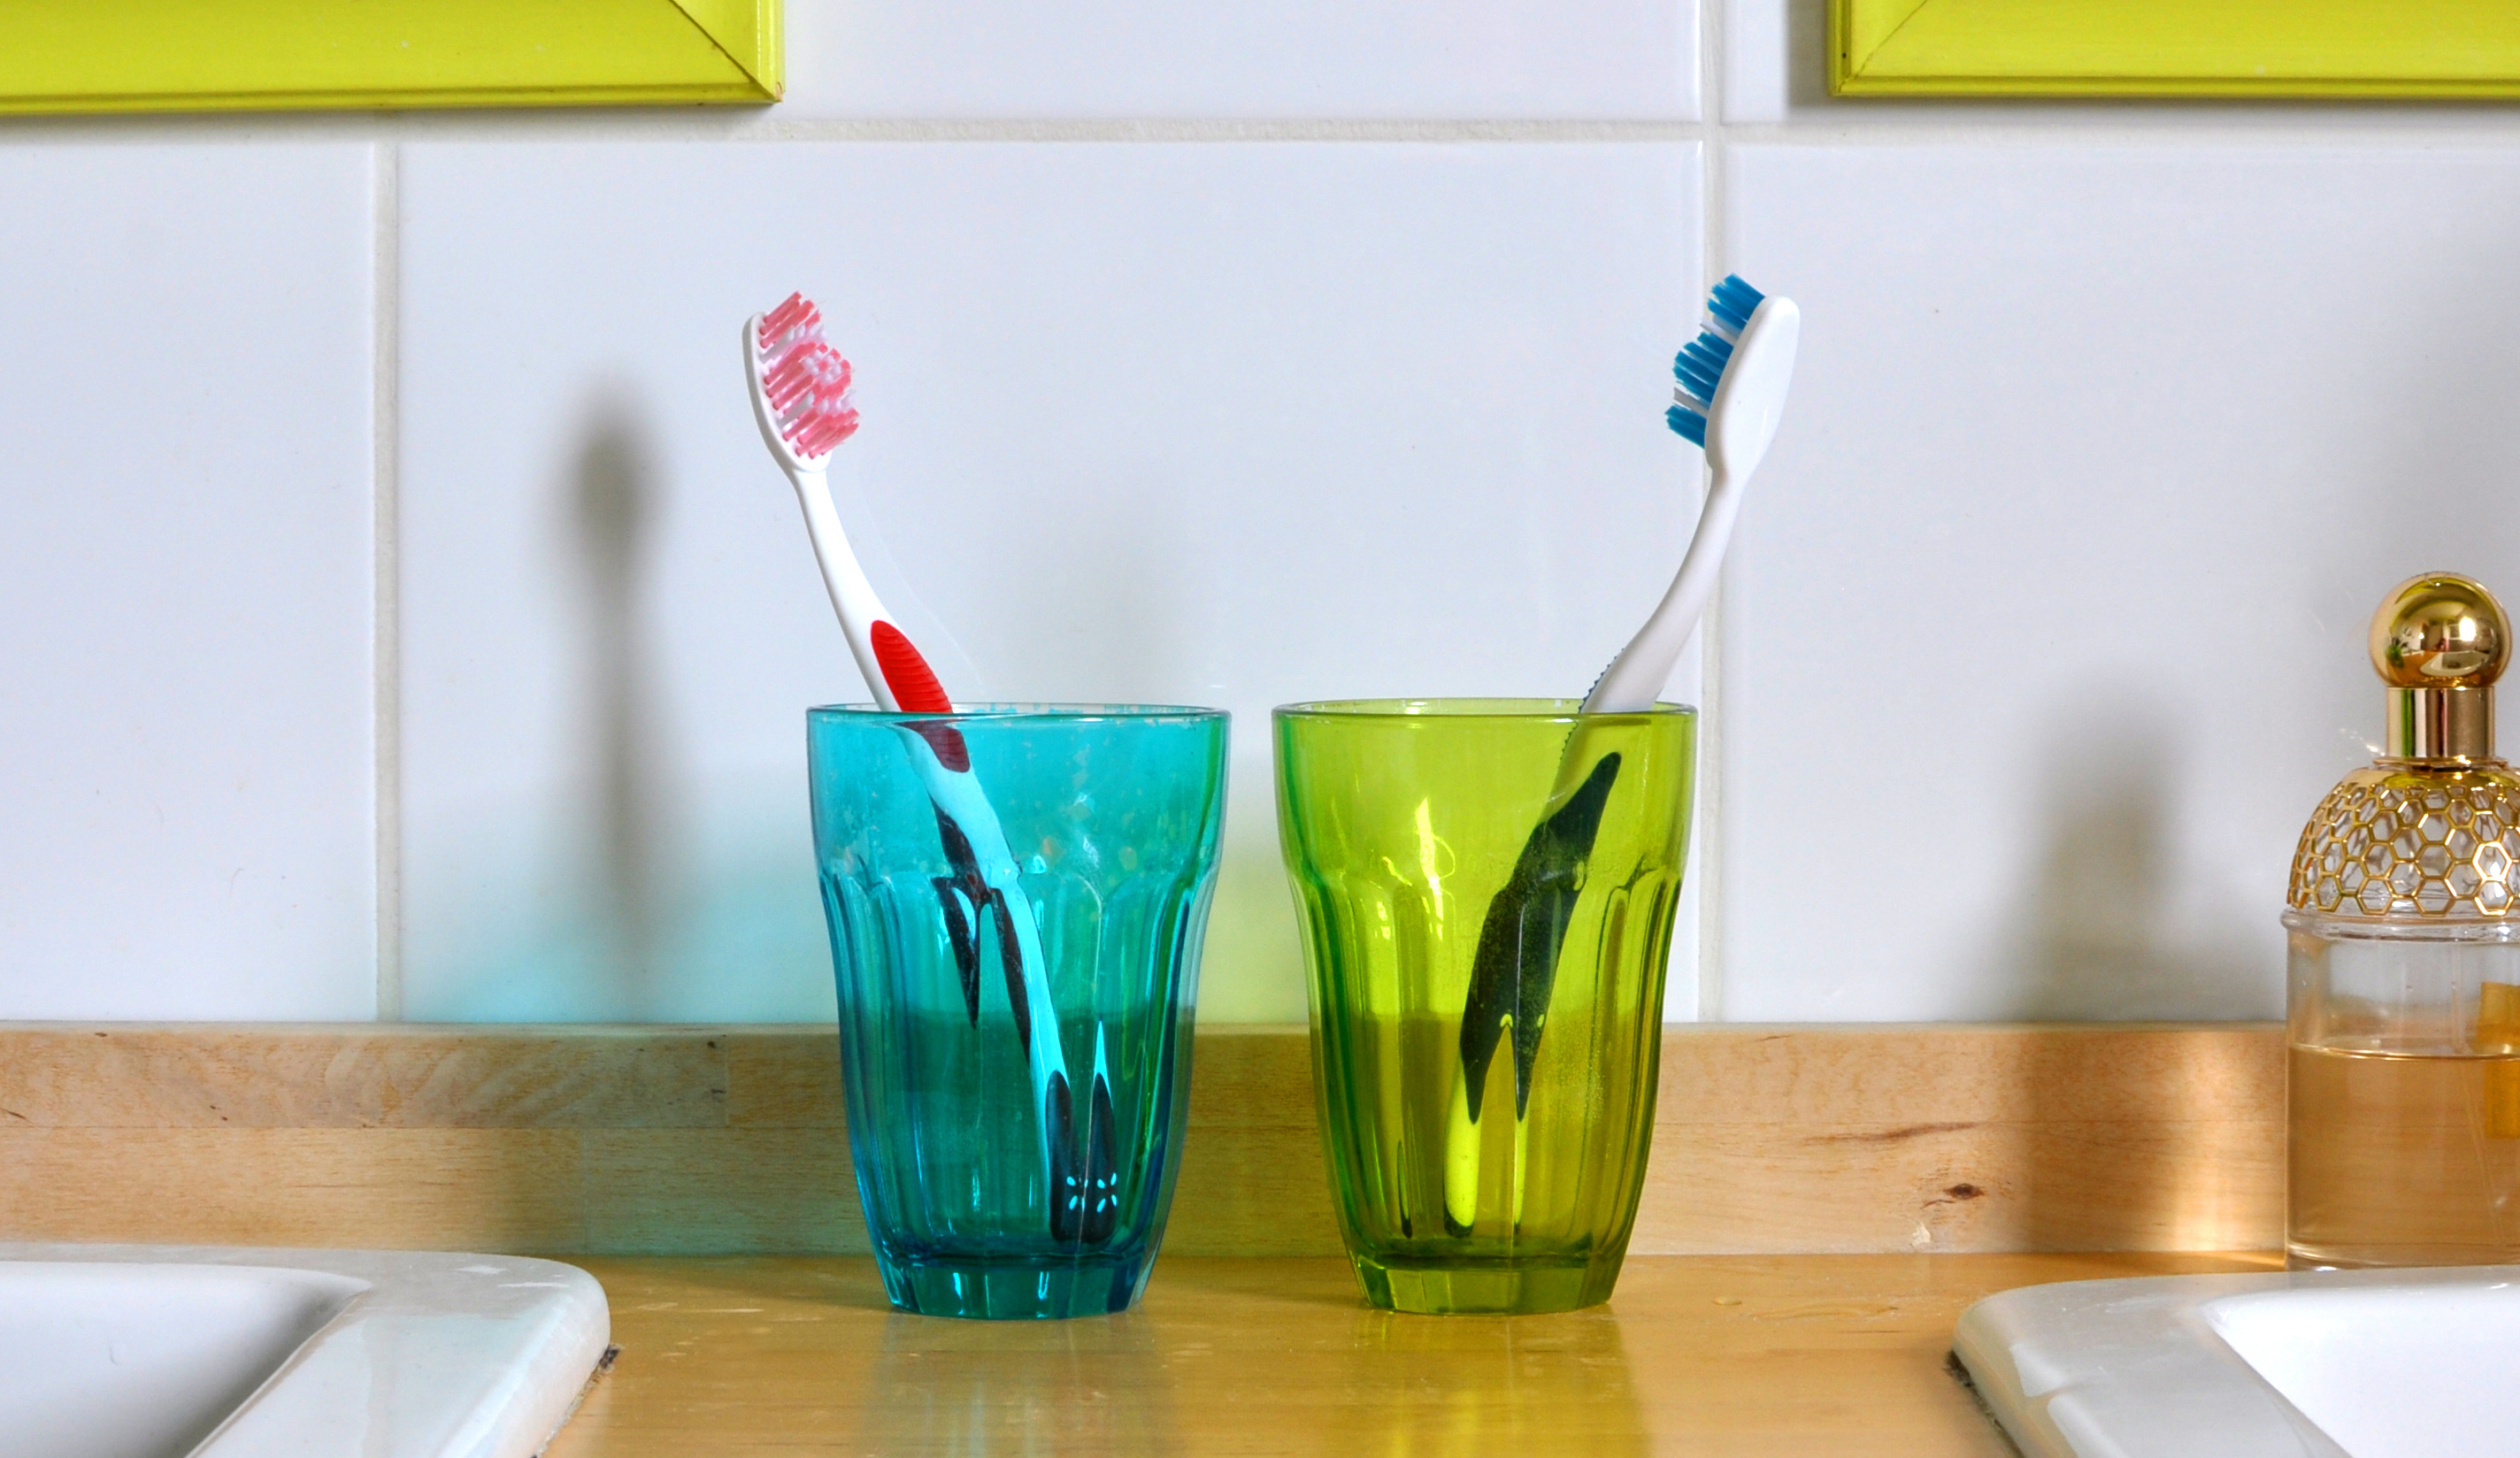 Cohabitation-toothbrushes